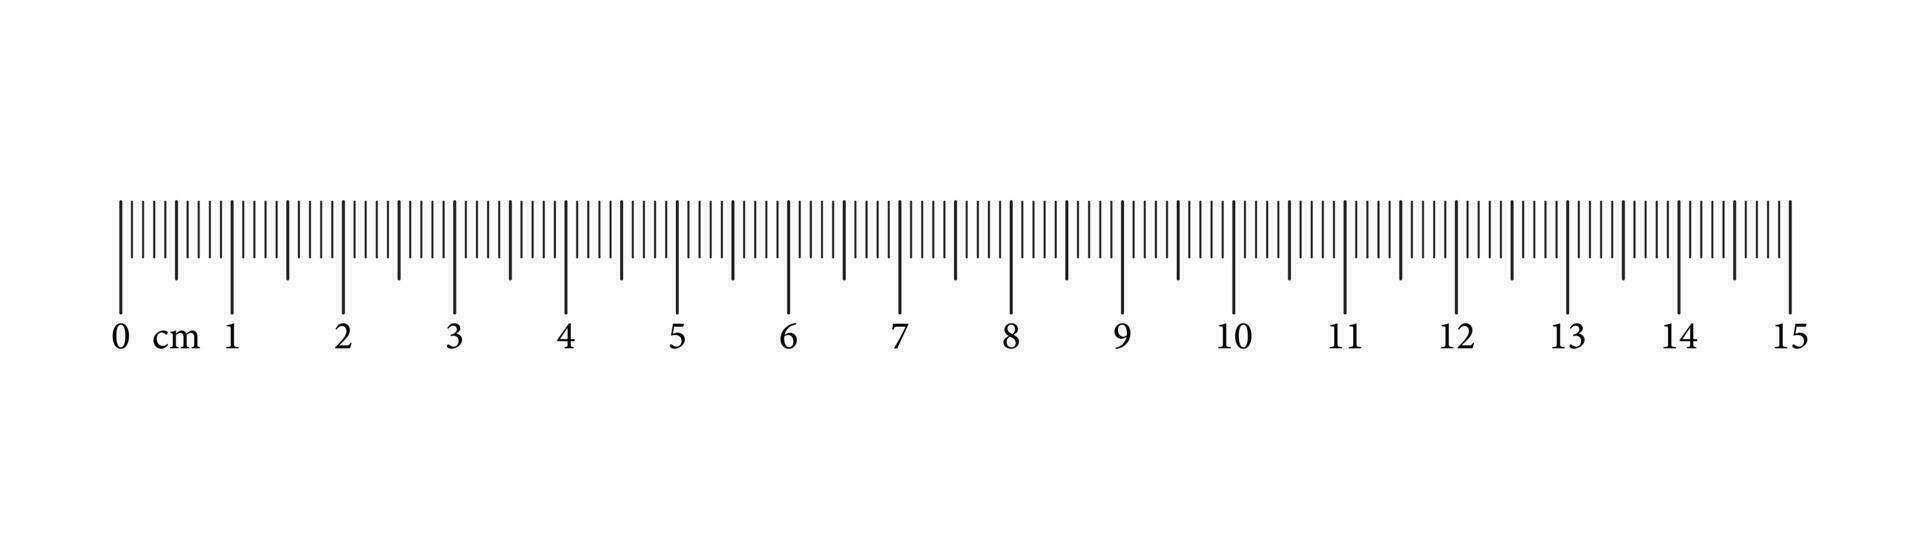 mätning Diagram med 15 centimeter. linjal skala med tal. längd mått matematik, distans, höjd, sömnad verktyg. grafisk vektor illustration.